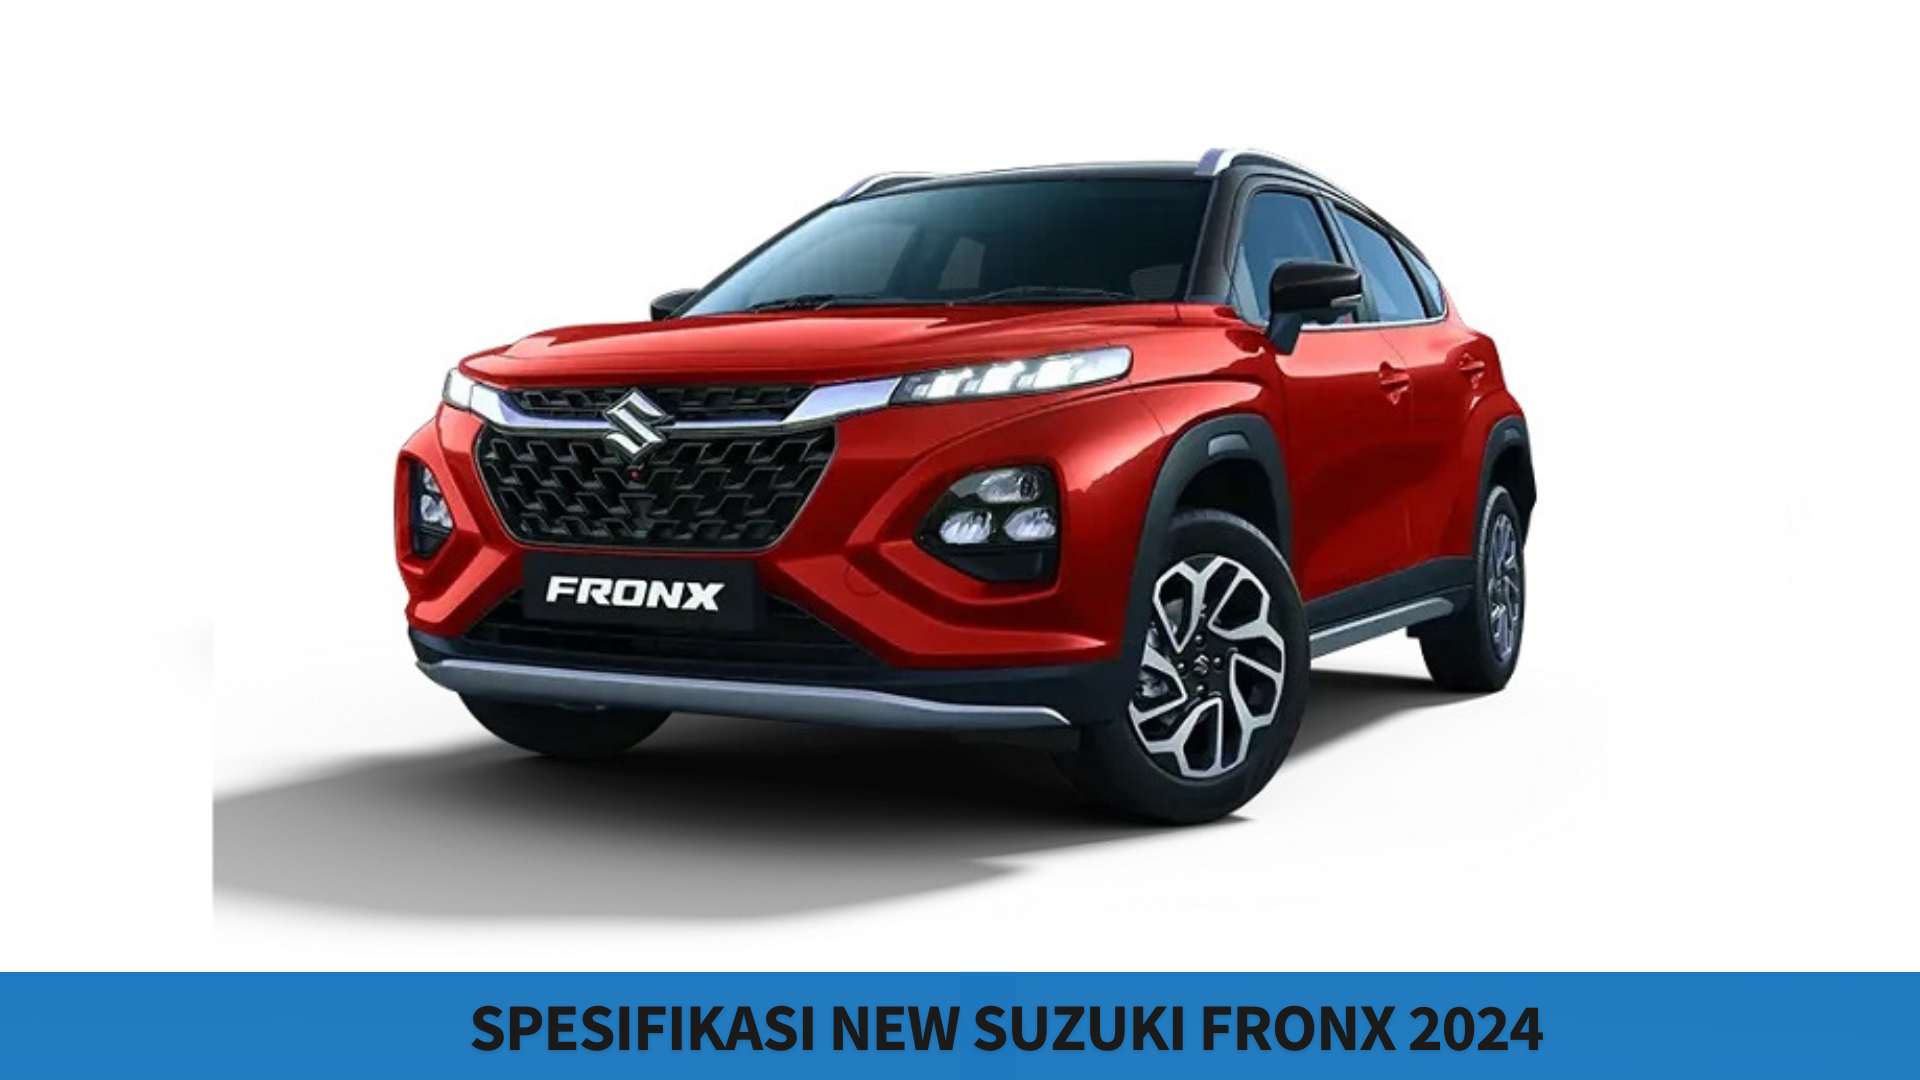 Spesifikasi New Suzuki Fronx 2024, Punya Desain Memikat Pecinta Otomotif dengan Harga Hanya Rp134 Jutaan